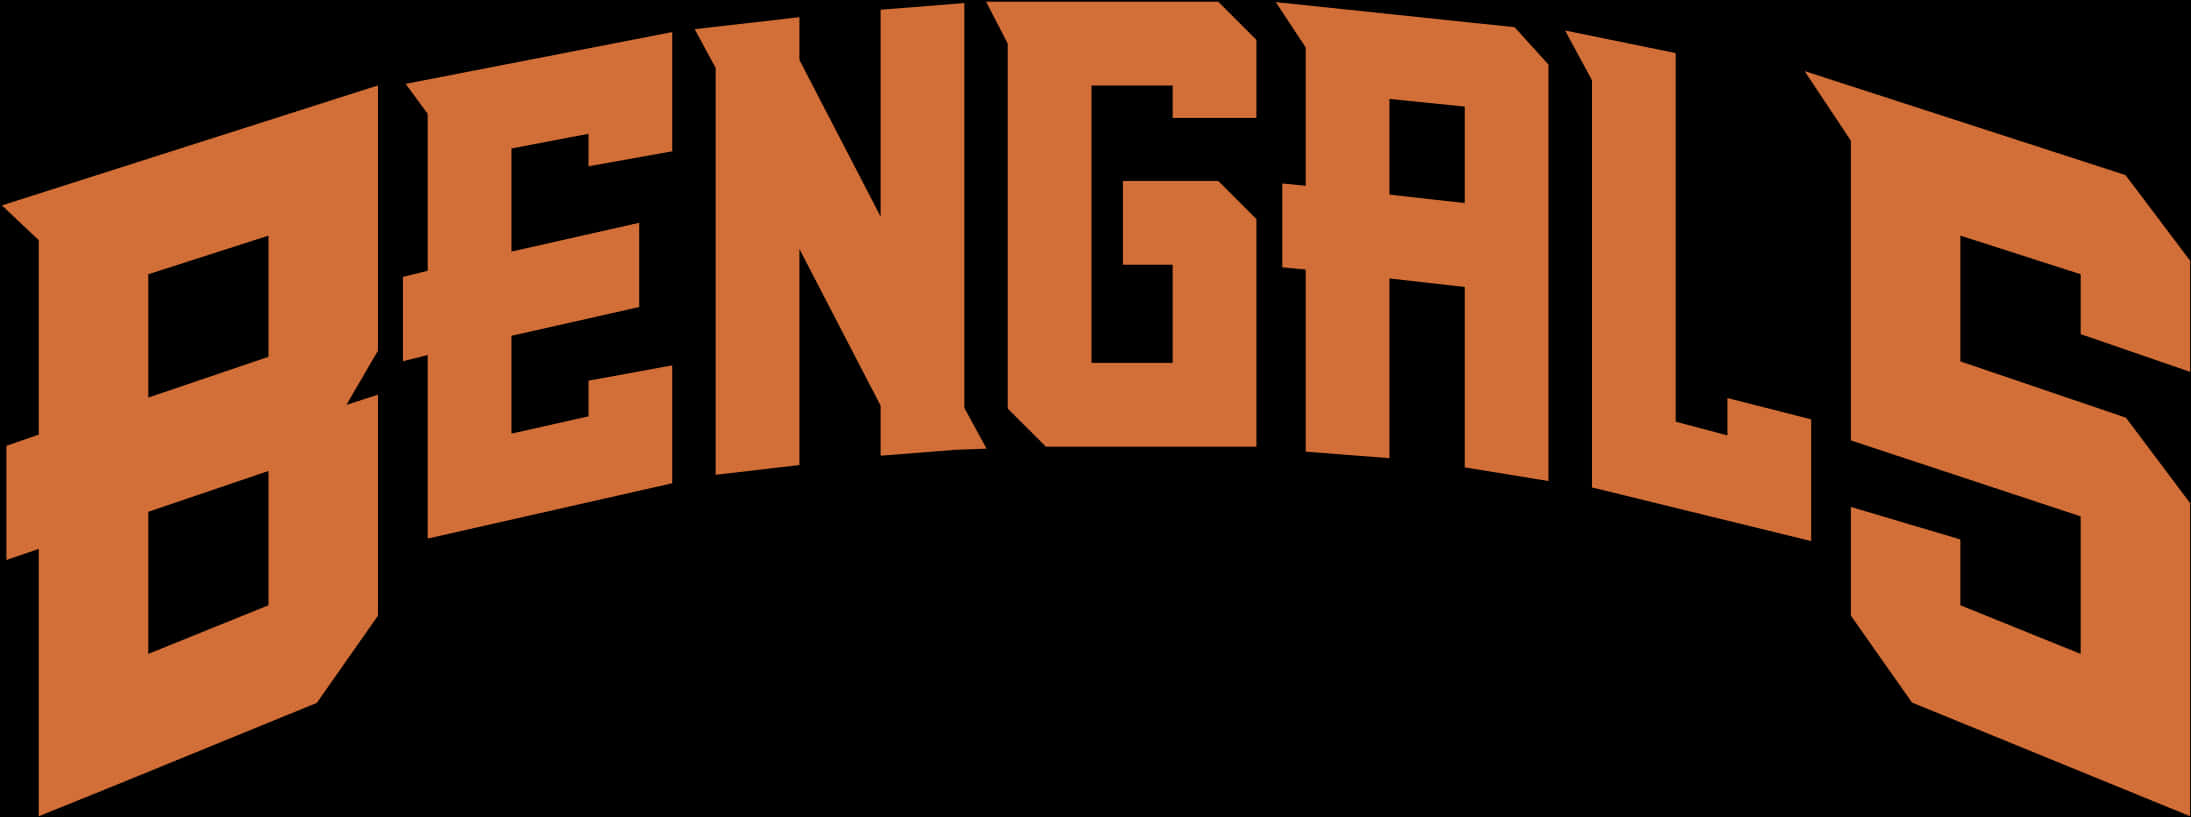 Cincinnati Bengals Text Logo PNG